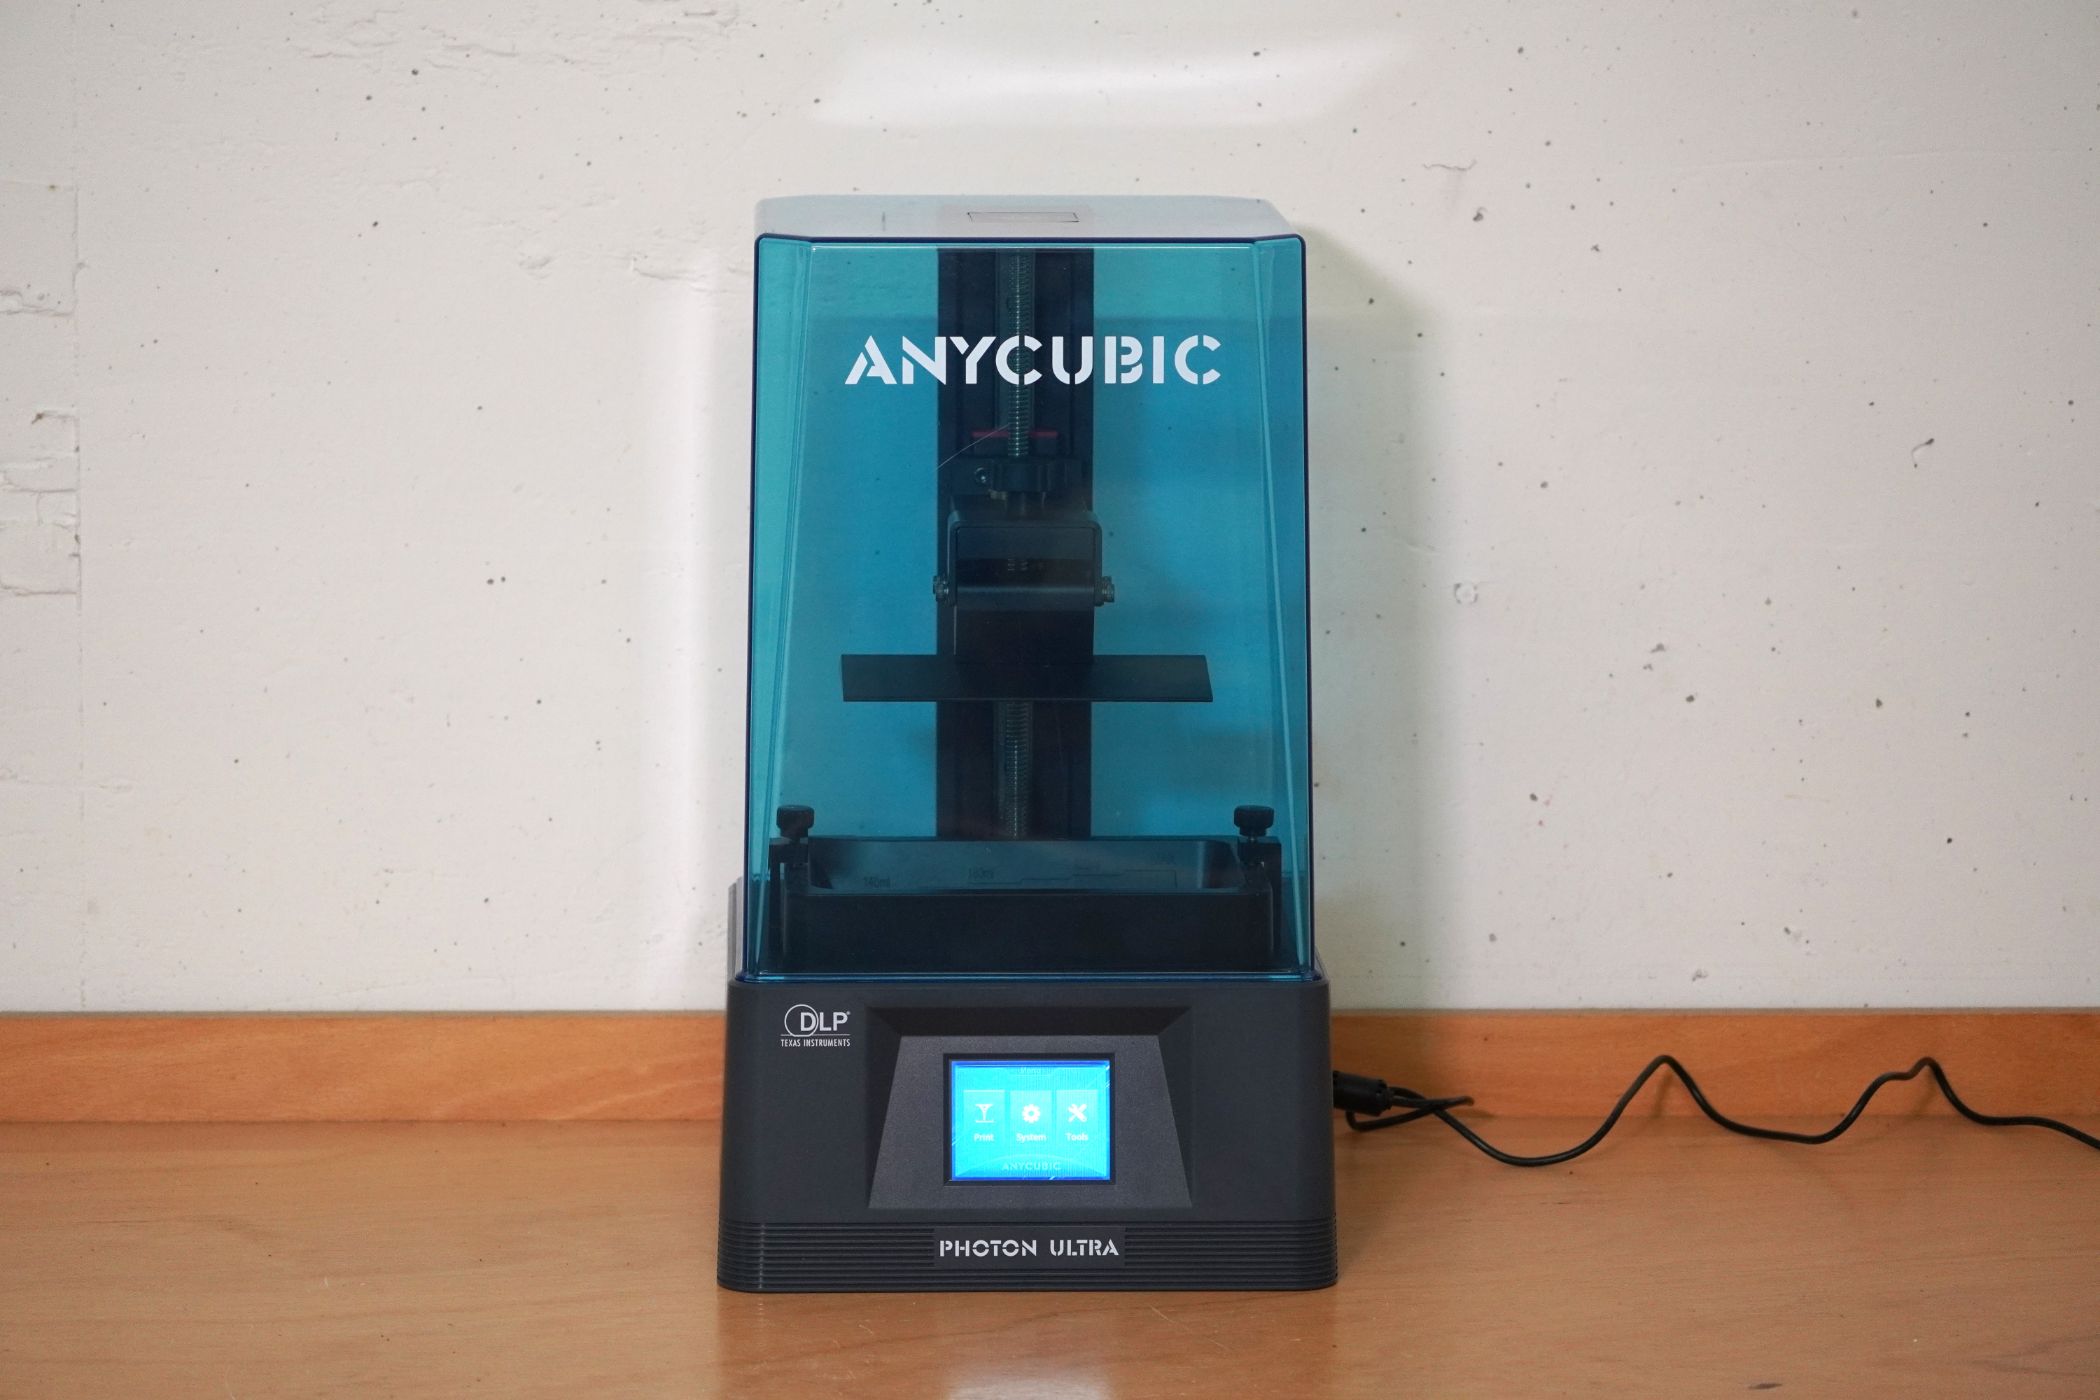 Anycubic Photon D2 im Test: Lohnt sich der neue DLP-Drucker?